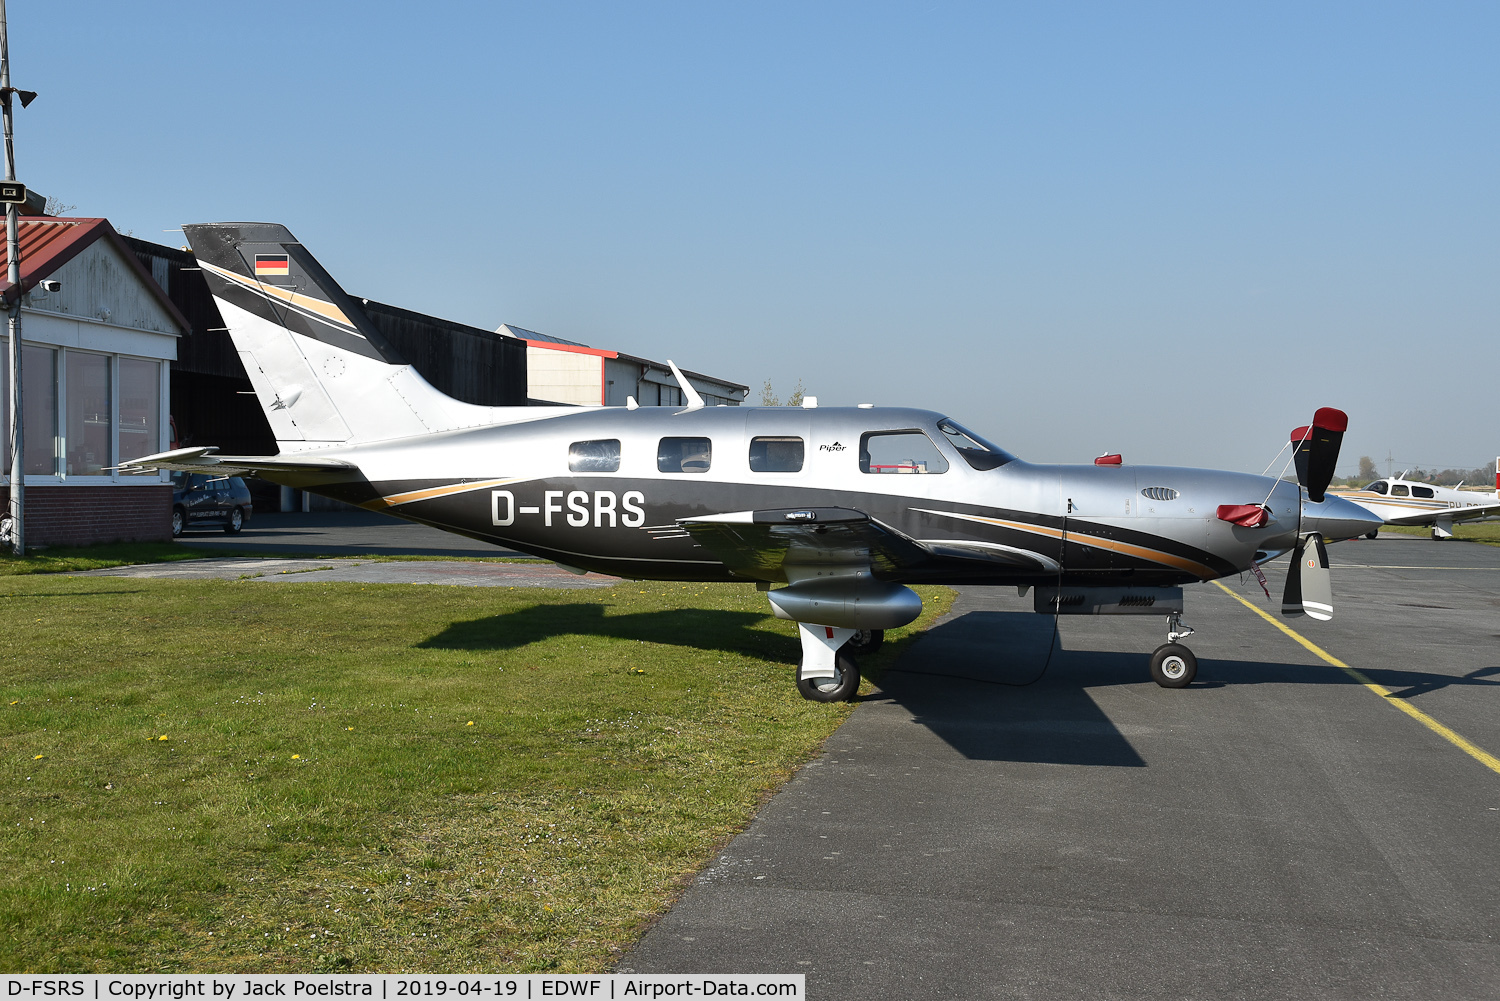 D-FSRS, 2015 Piper PA-46-500TP Malibu Meridian C/N 4697604, At Leer-Papenburg airport